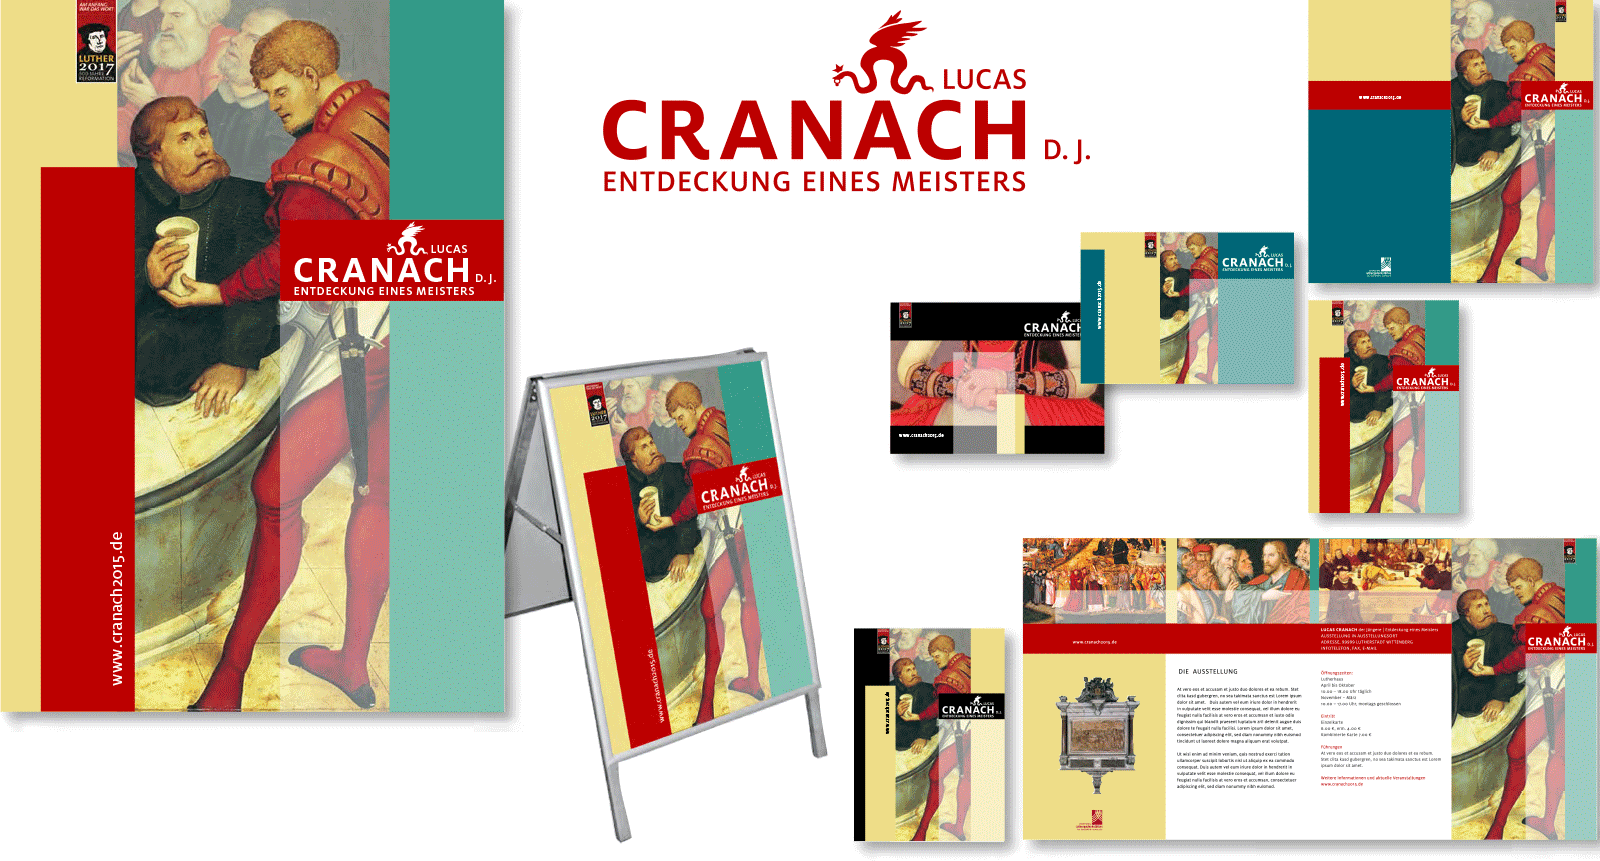 Entwurf zum Wettbewerb für das Themenjahr »Lucas Cranach, der Jüngere – Entdeckung eines Meisters« für die Stiftung Luthergedenkstätten, 2013